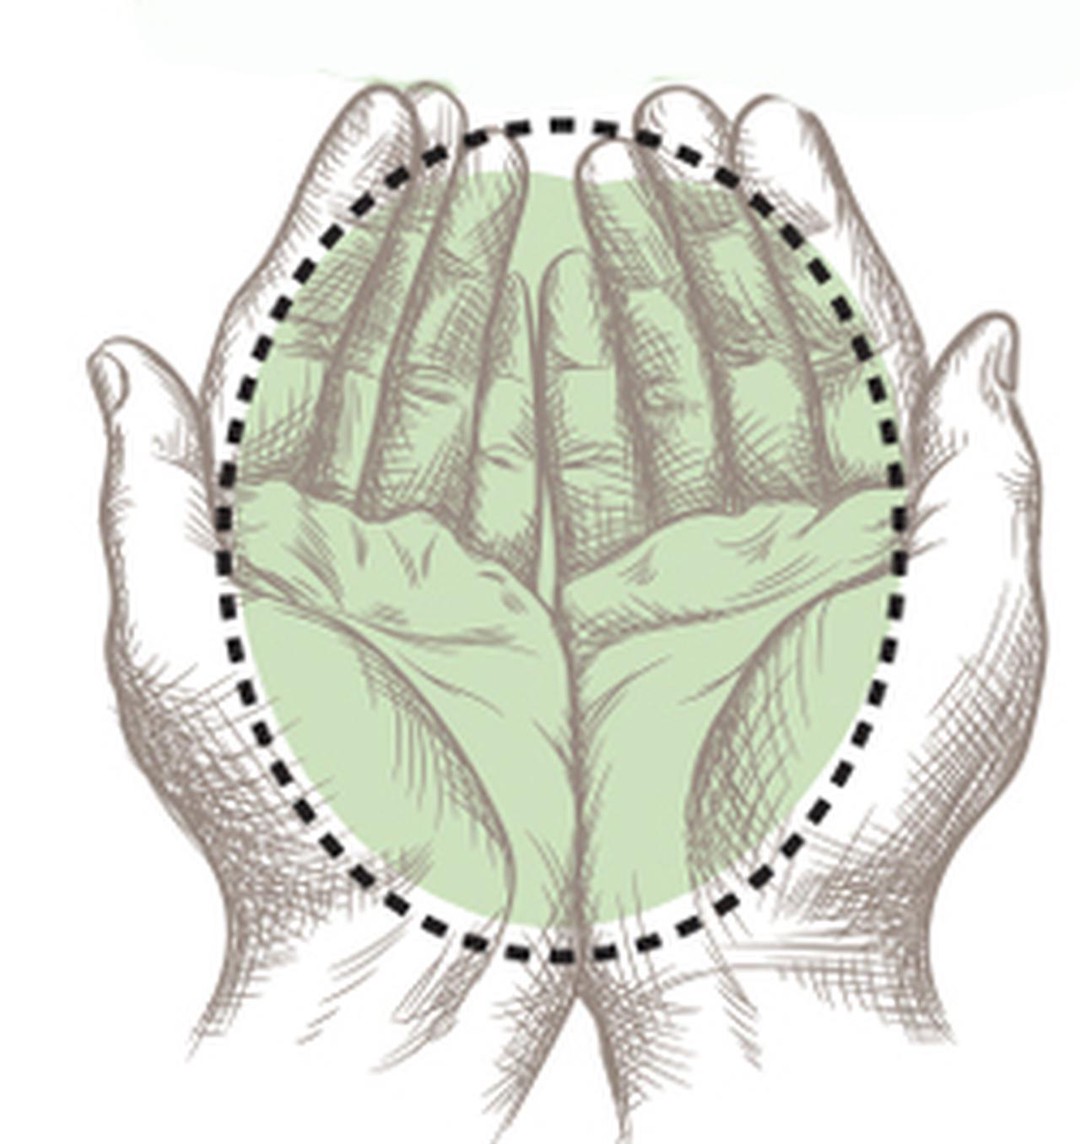 El método de la mano, una herramienta sencilla y práctica